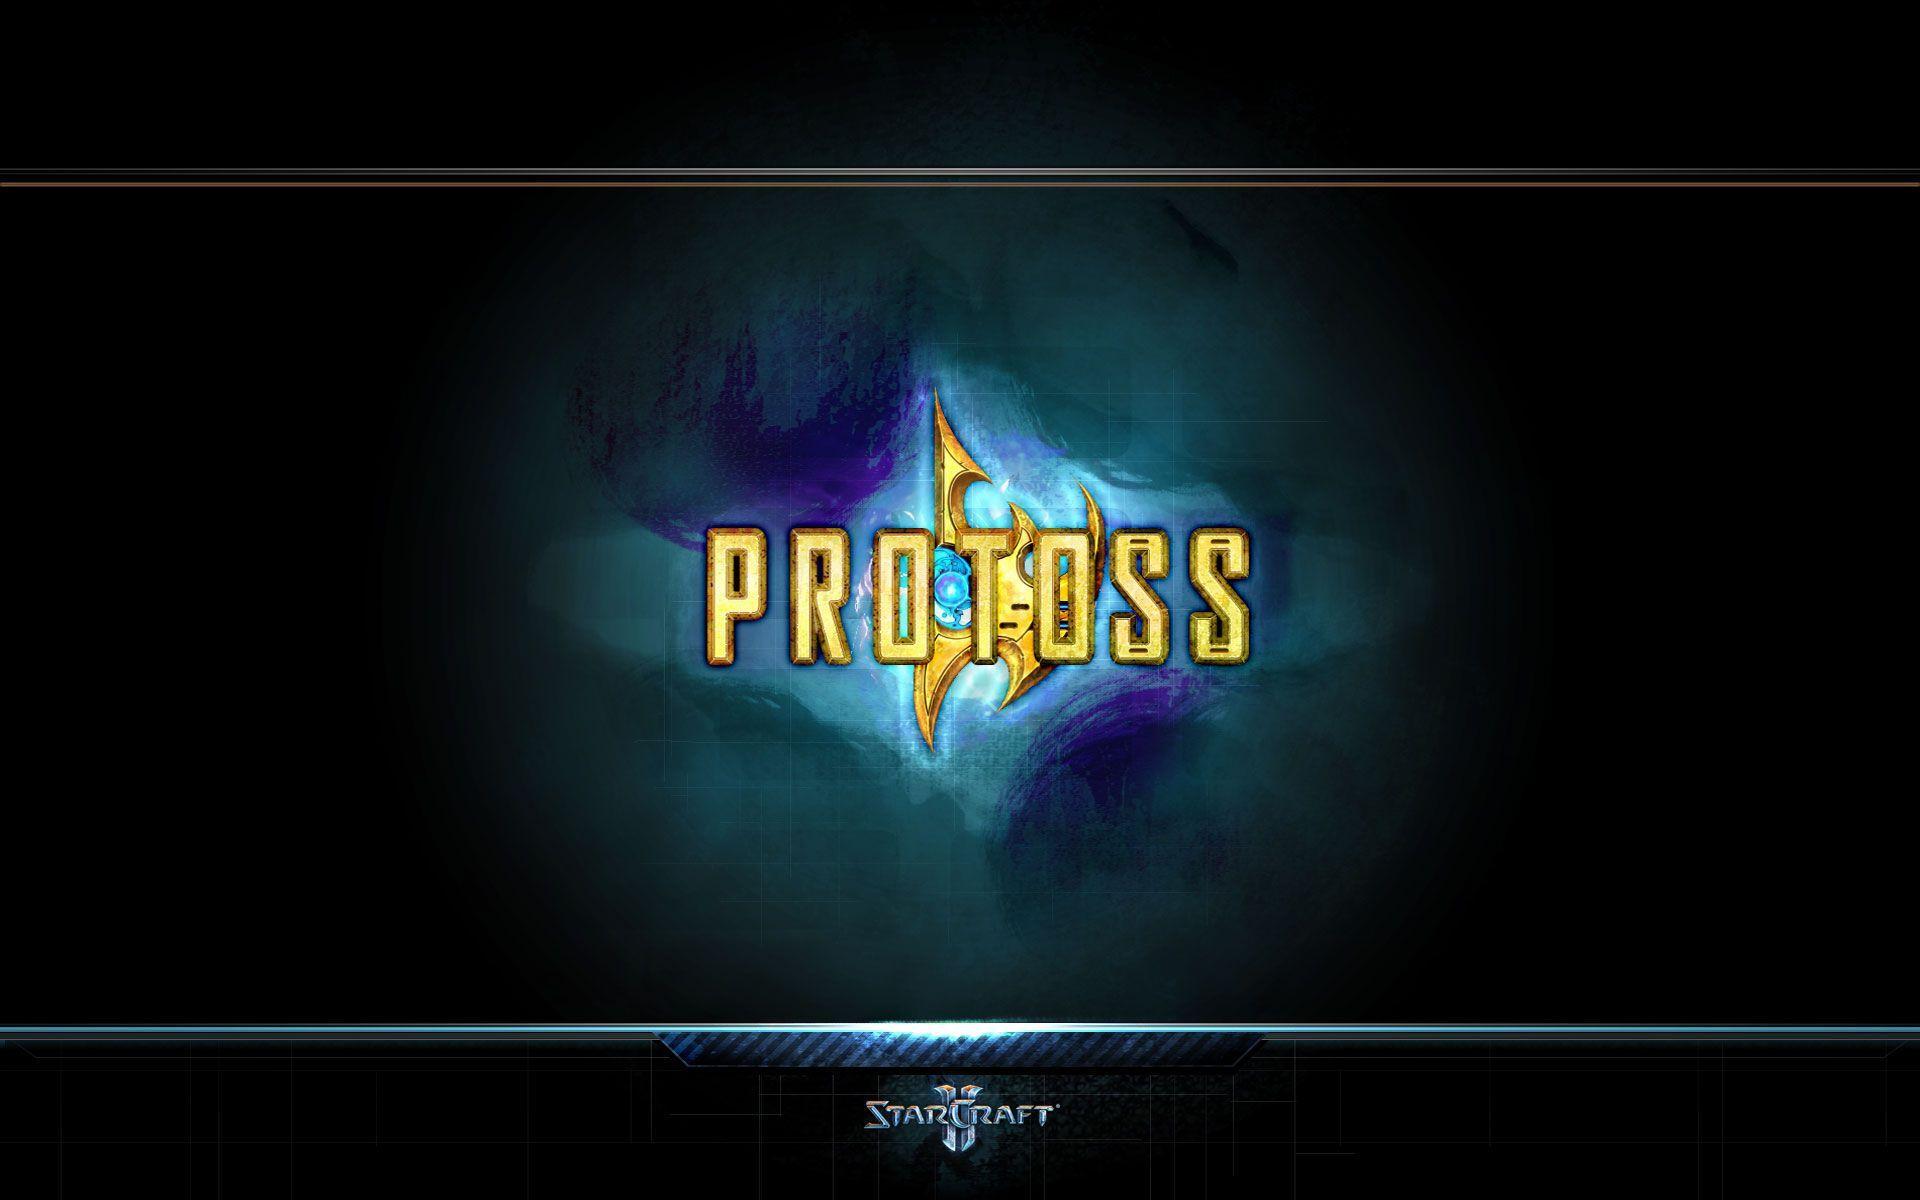 Enjoy this new StarCraft 2 desktop background. StarCraft 2 wallpaper